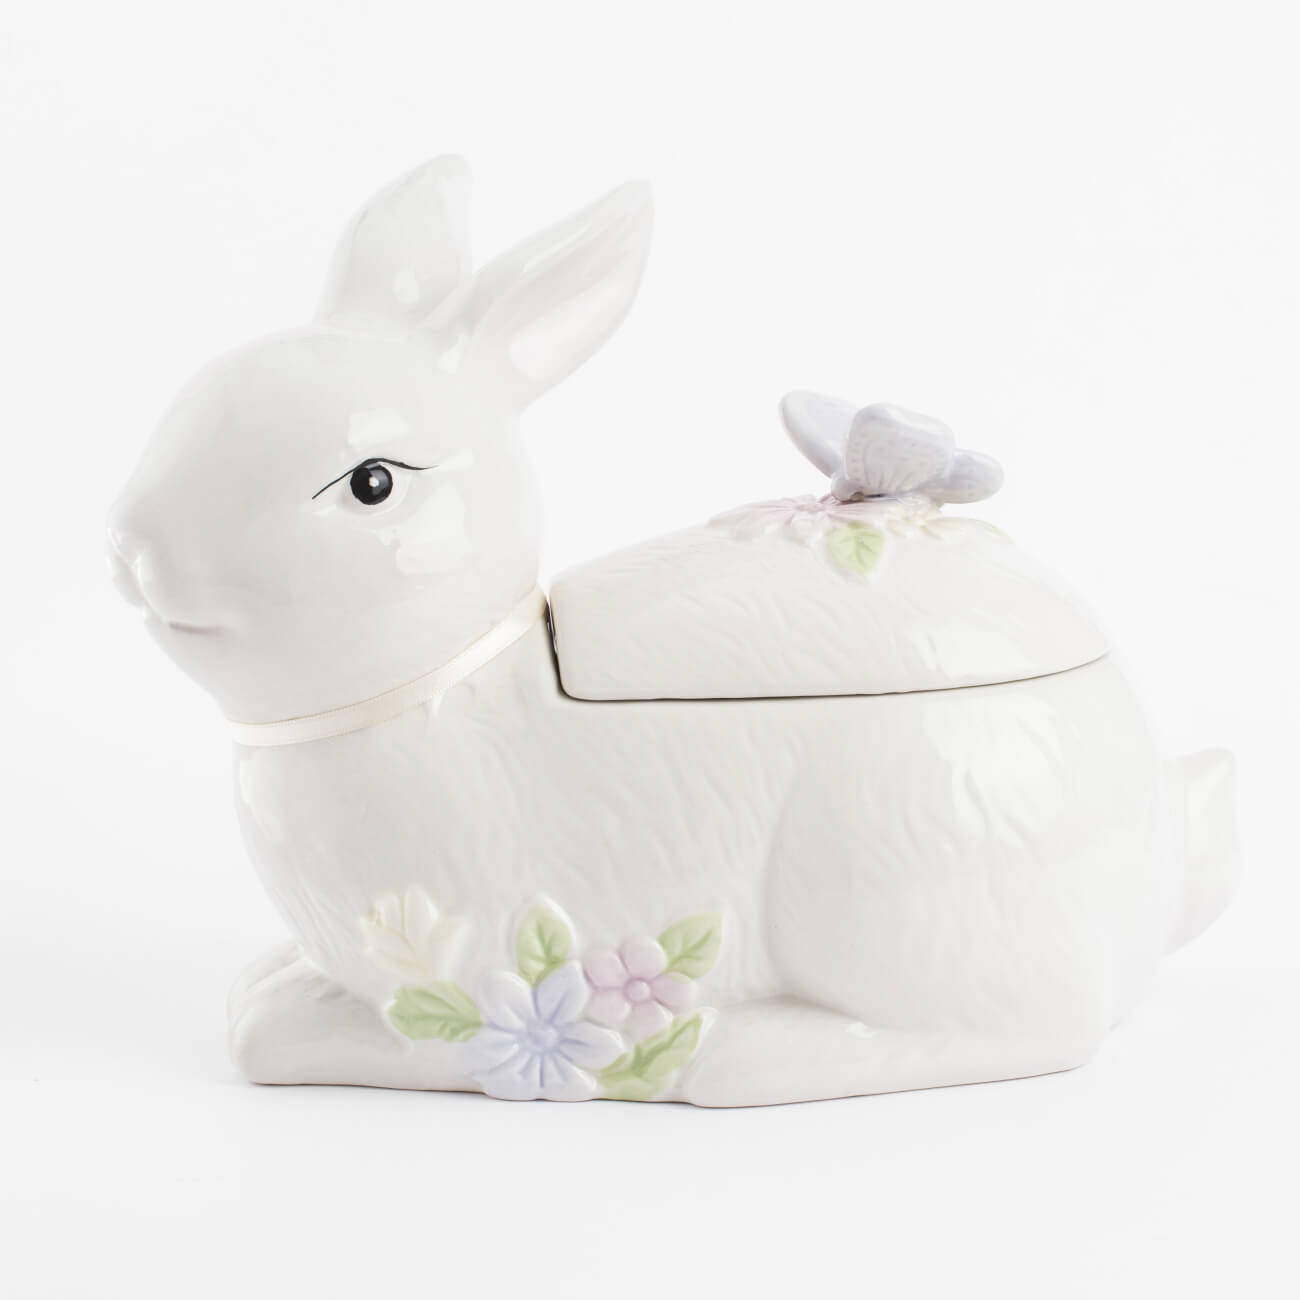 емкость для хранения 17х14 см 1 5 л с ручкой керамика молочная перламутр кролик easter Емкость для хранения, 25х19 см, 1,1 л, керамика, белая, Кролик с бабочкой, Easter